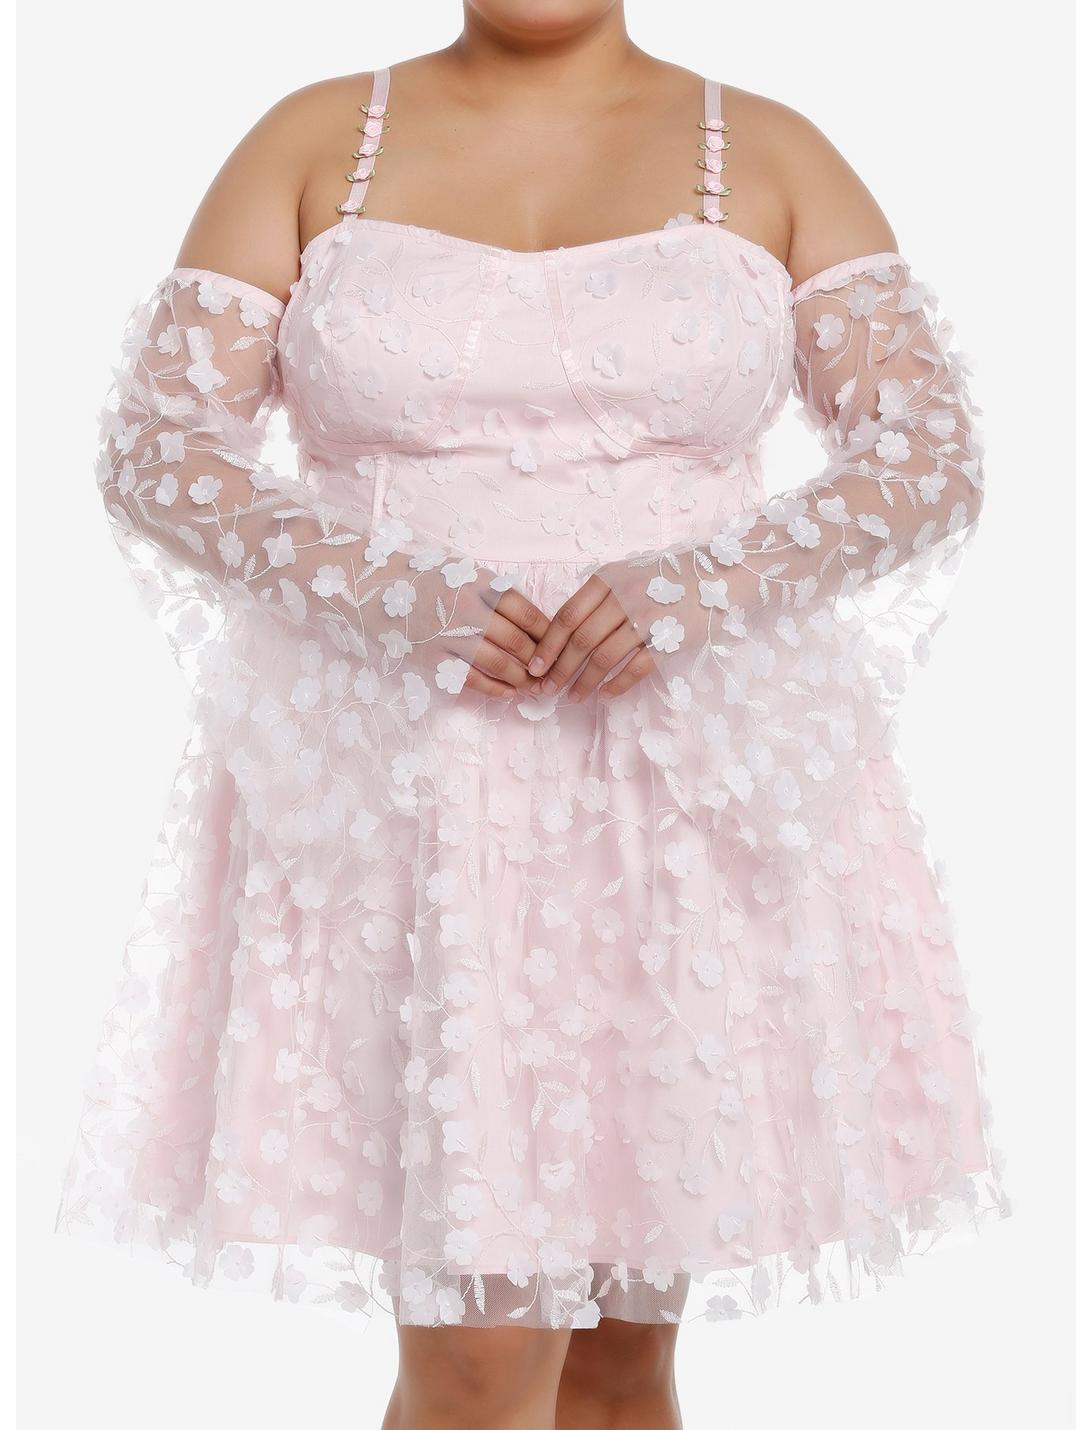 Thorn & Fable Pink Rosette Cold Shoulder Dress Plus Size, PINK, hi-res